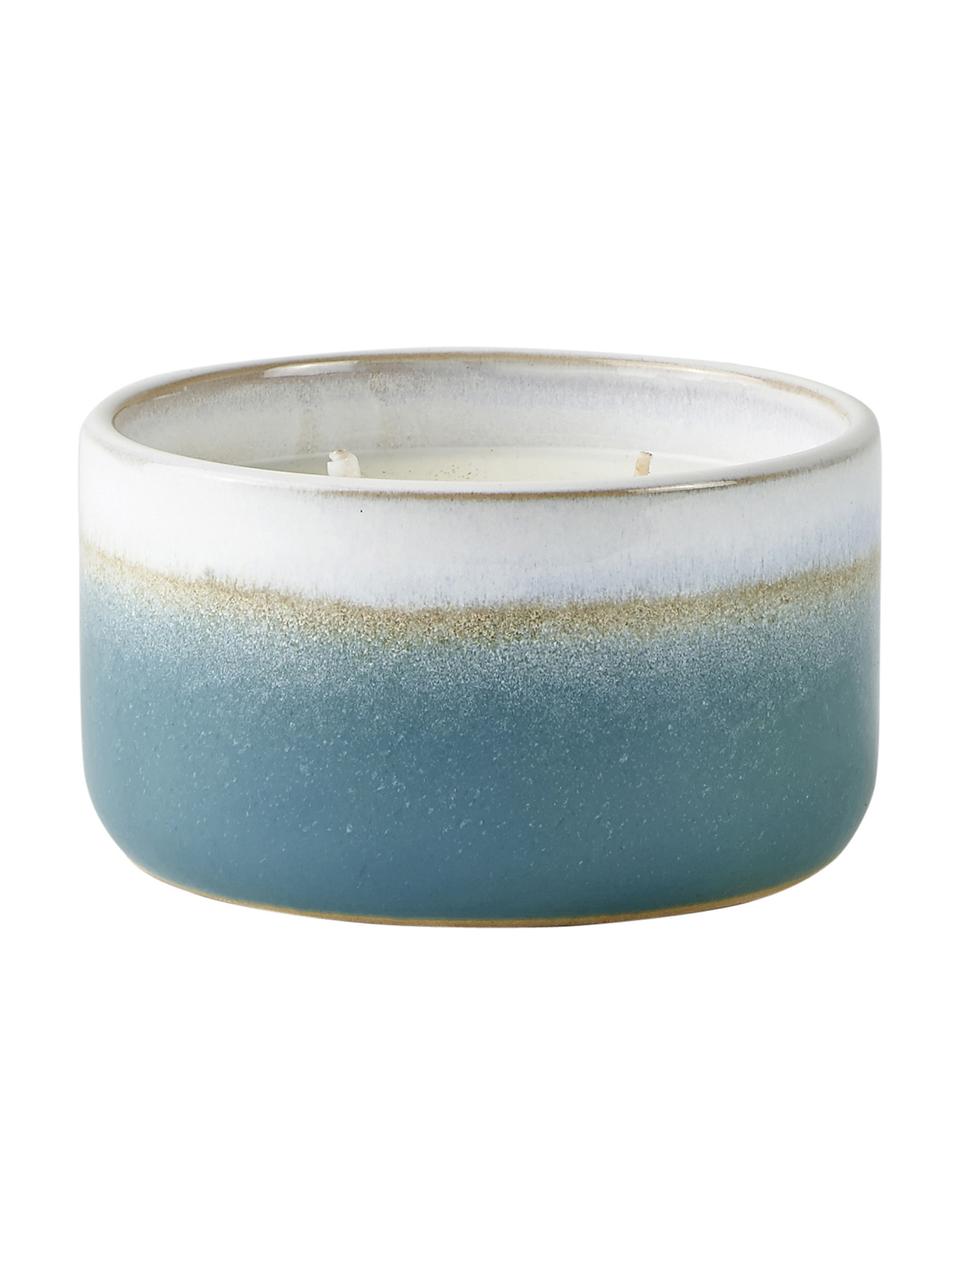 Duftkerze Aqua (Baumwollblüte), Behälter: Keramik, Blau, Beige, Weiß, Ø 12 x H 7 cm